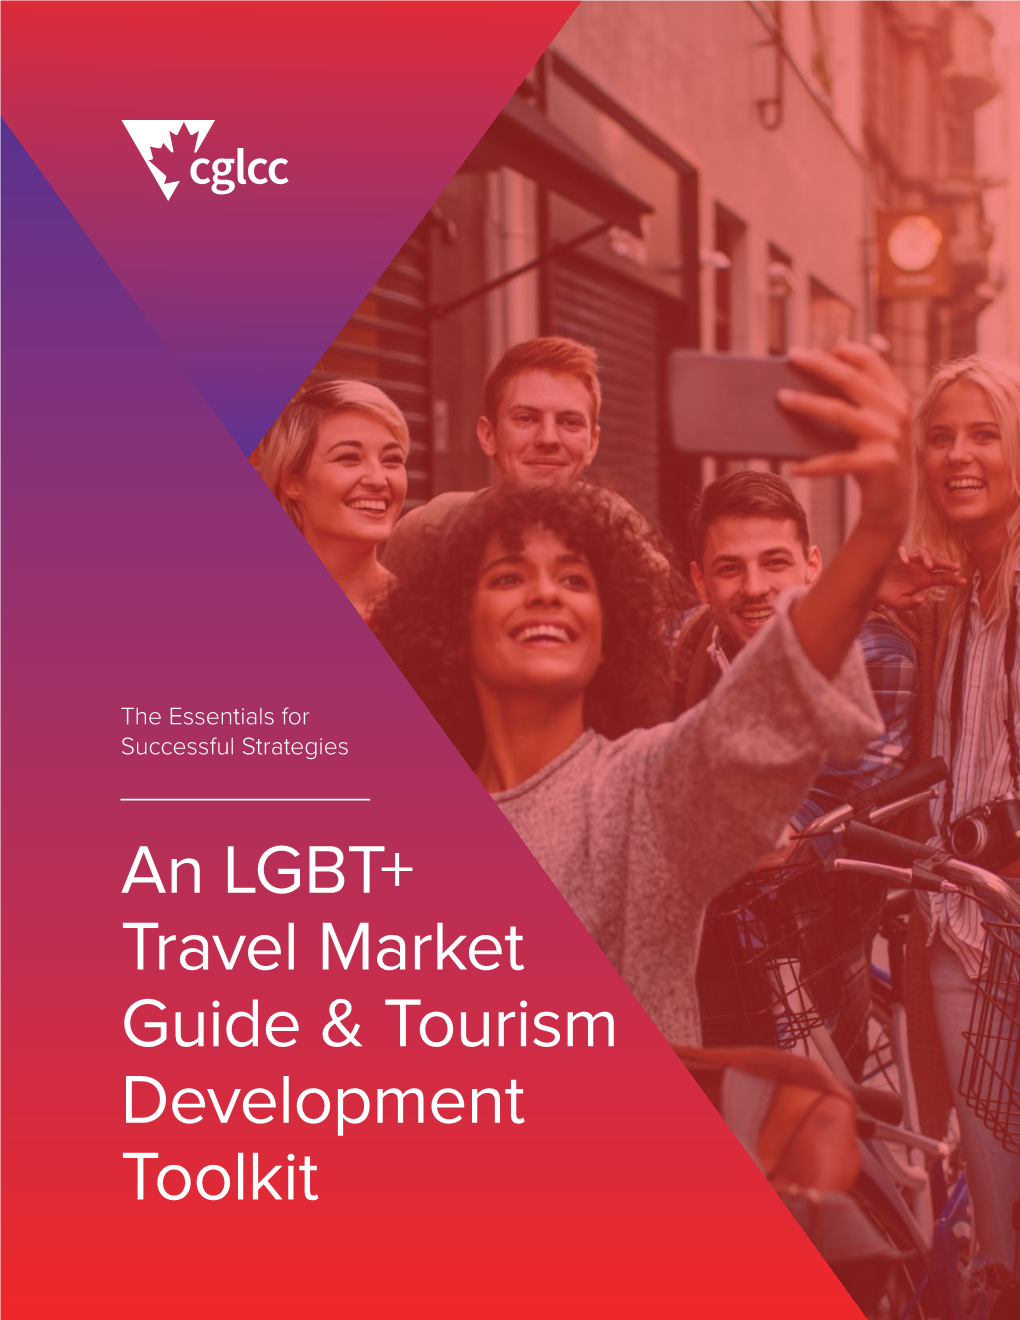 An LGBT+ Travel Market Guide & Tourism Development Toolkit